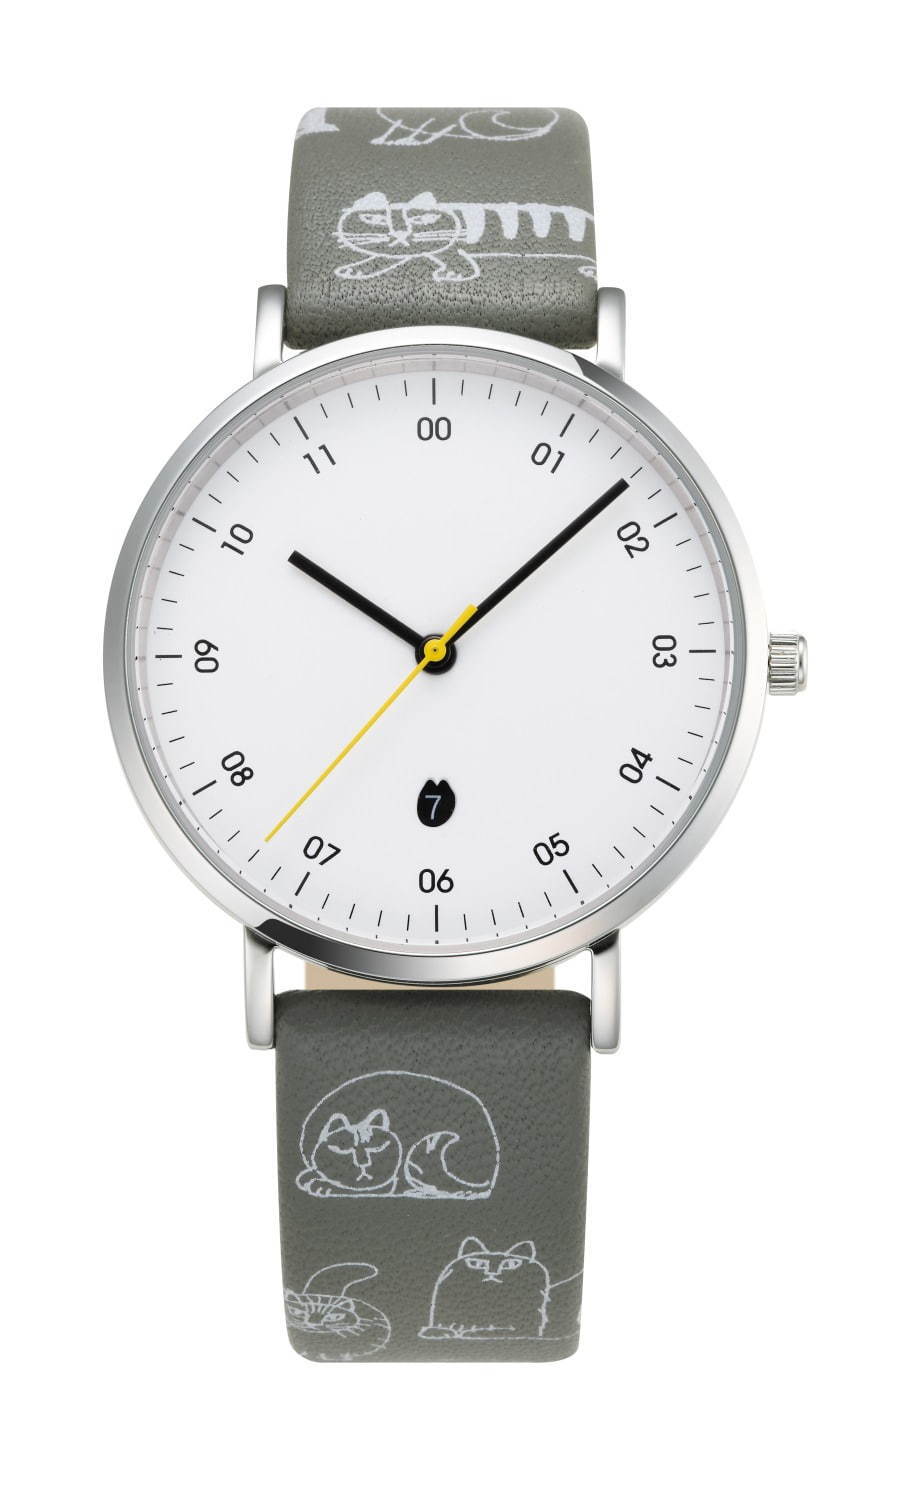 リサ・ラーソン新作腕時計 - 猫やハリネズミ柄のストラップを付け替え